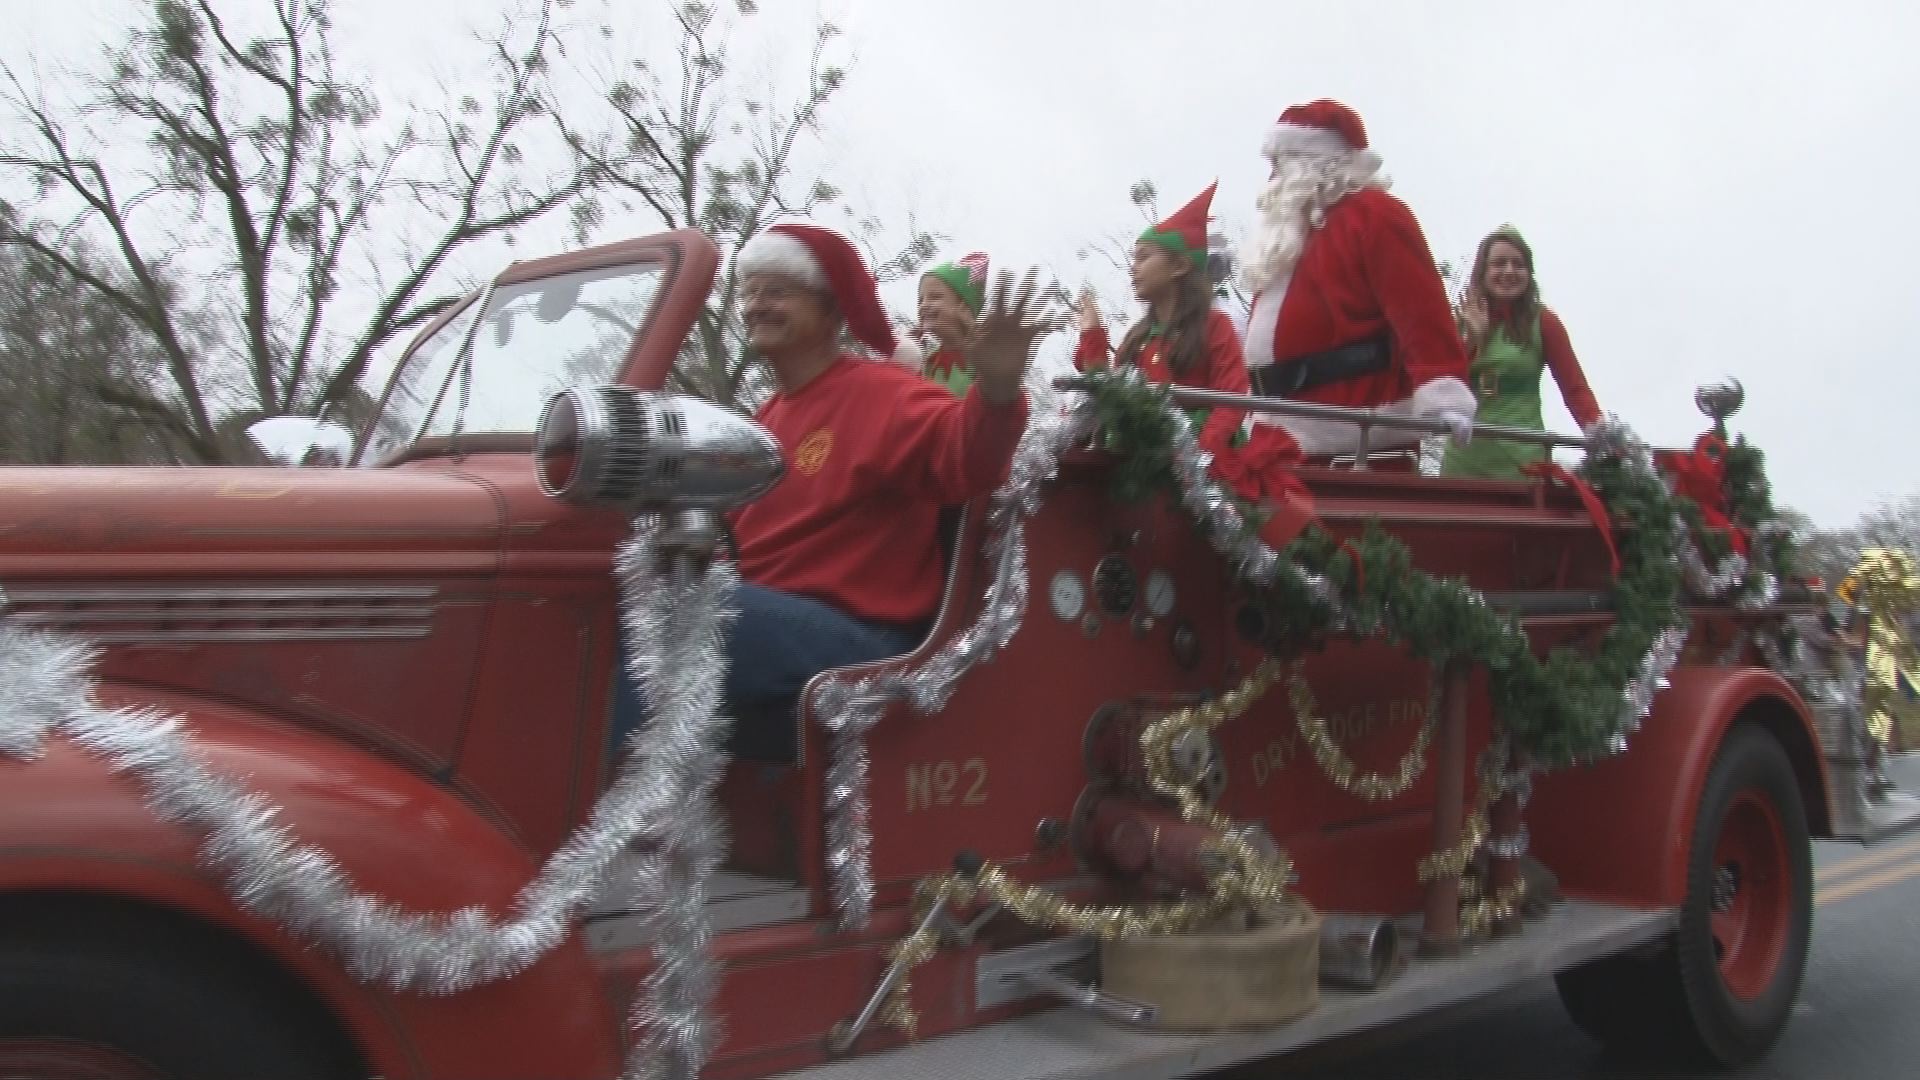 Santa comes to small town America in Bolingbroke Parade